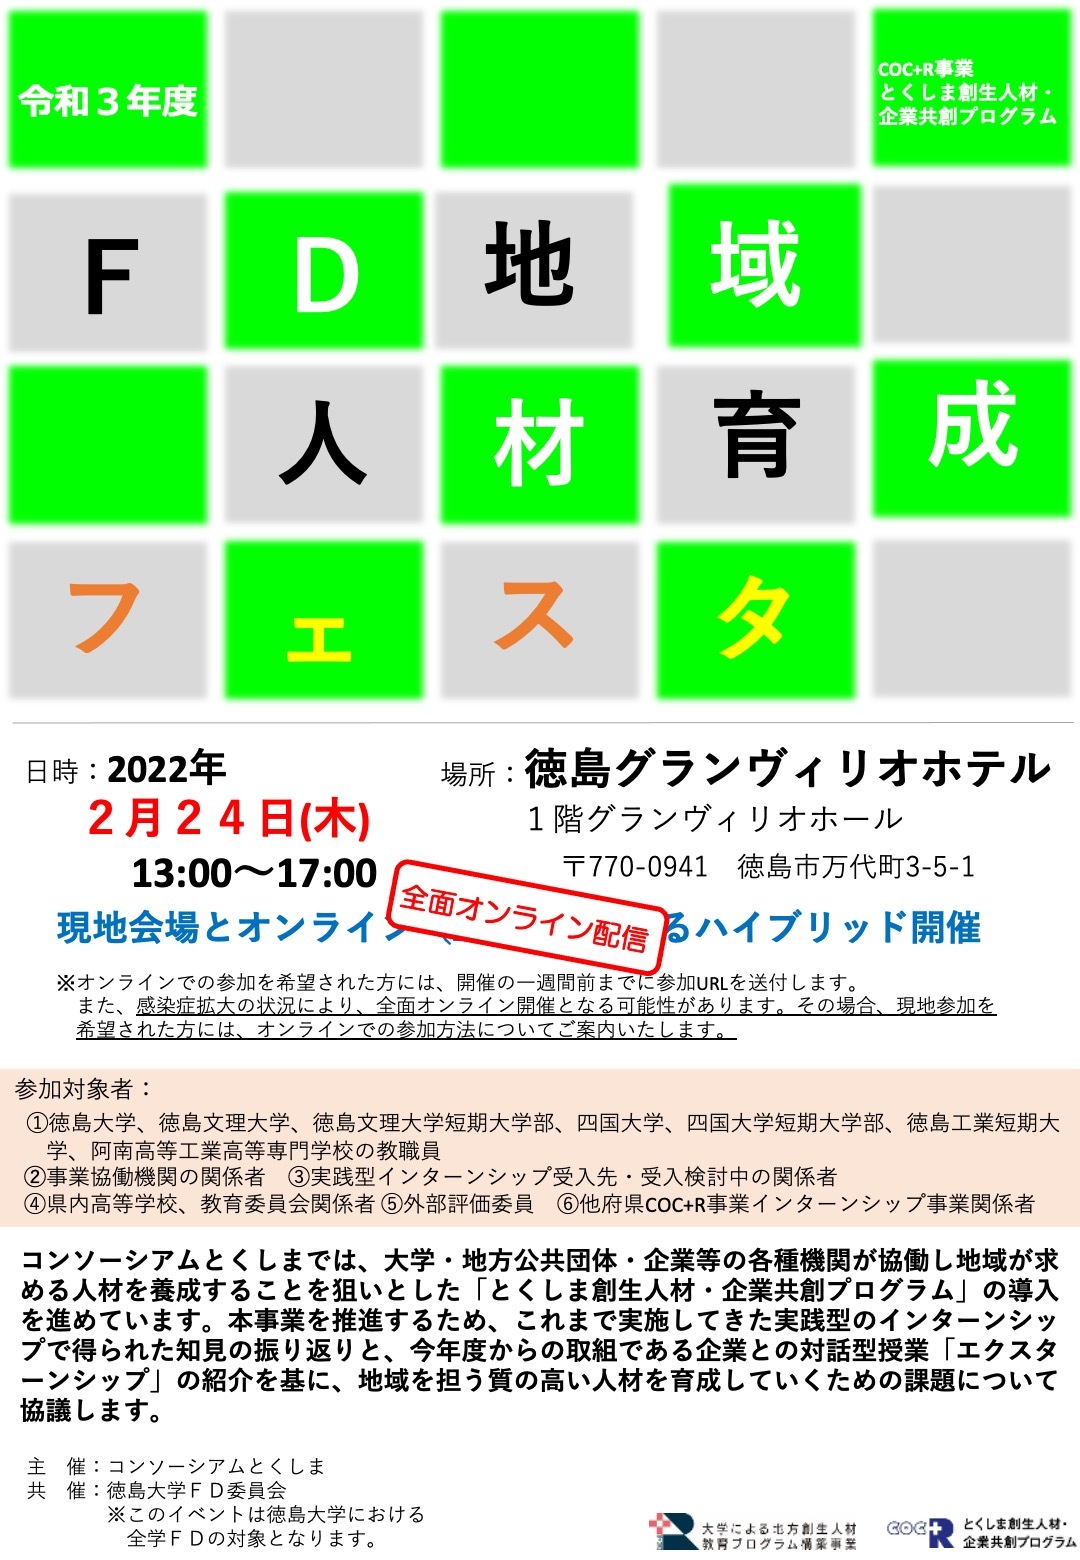 R3 FDフェスタ・チラシ(4.2.14改).jpg